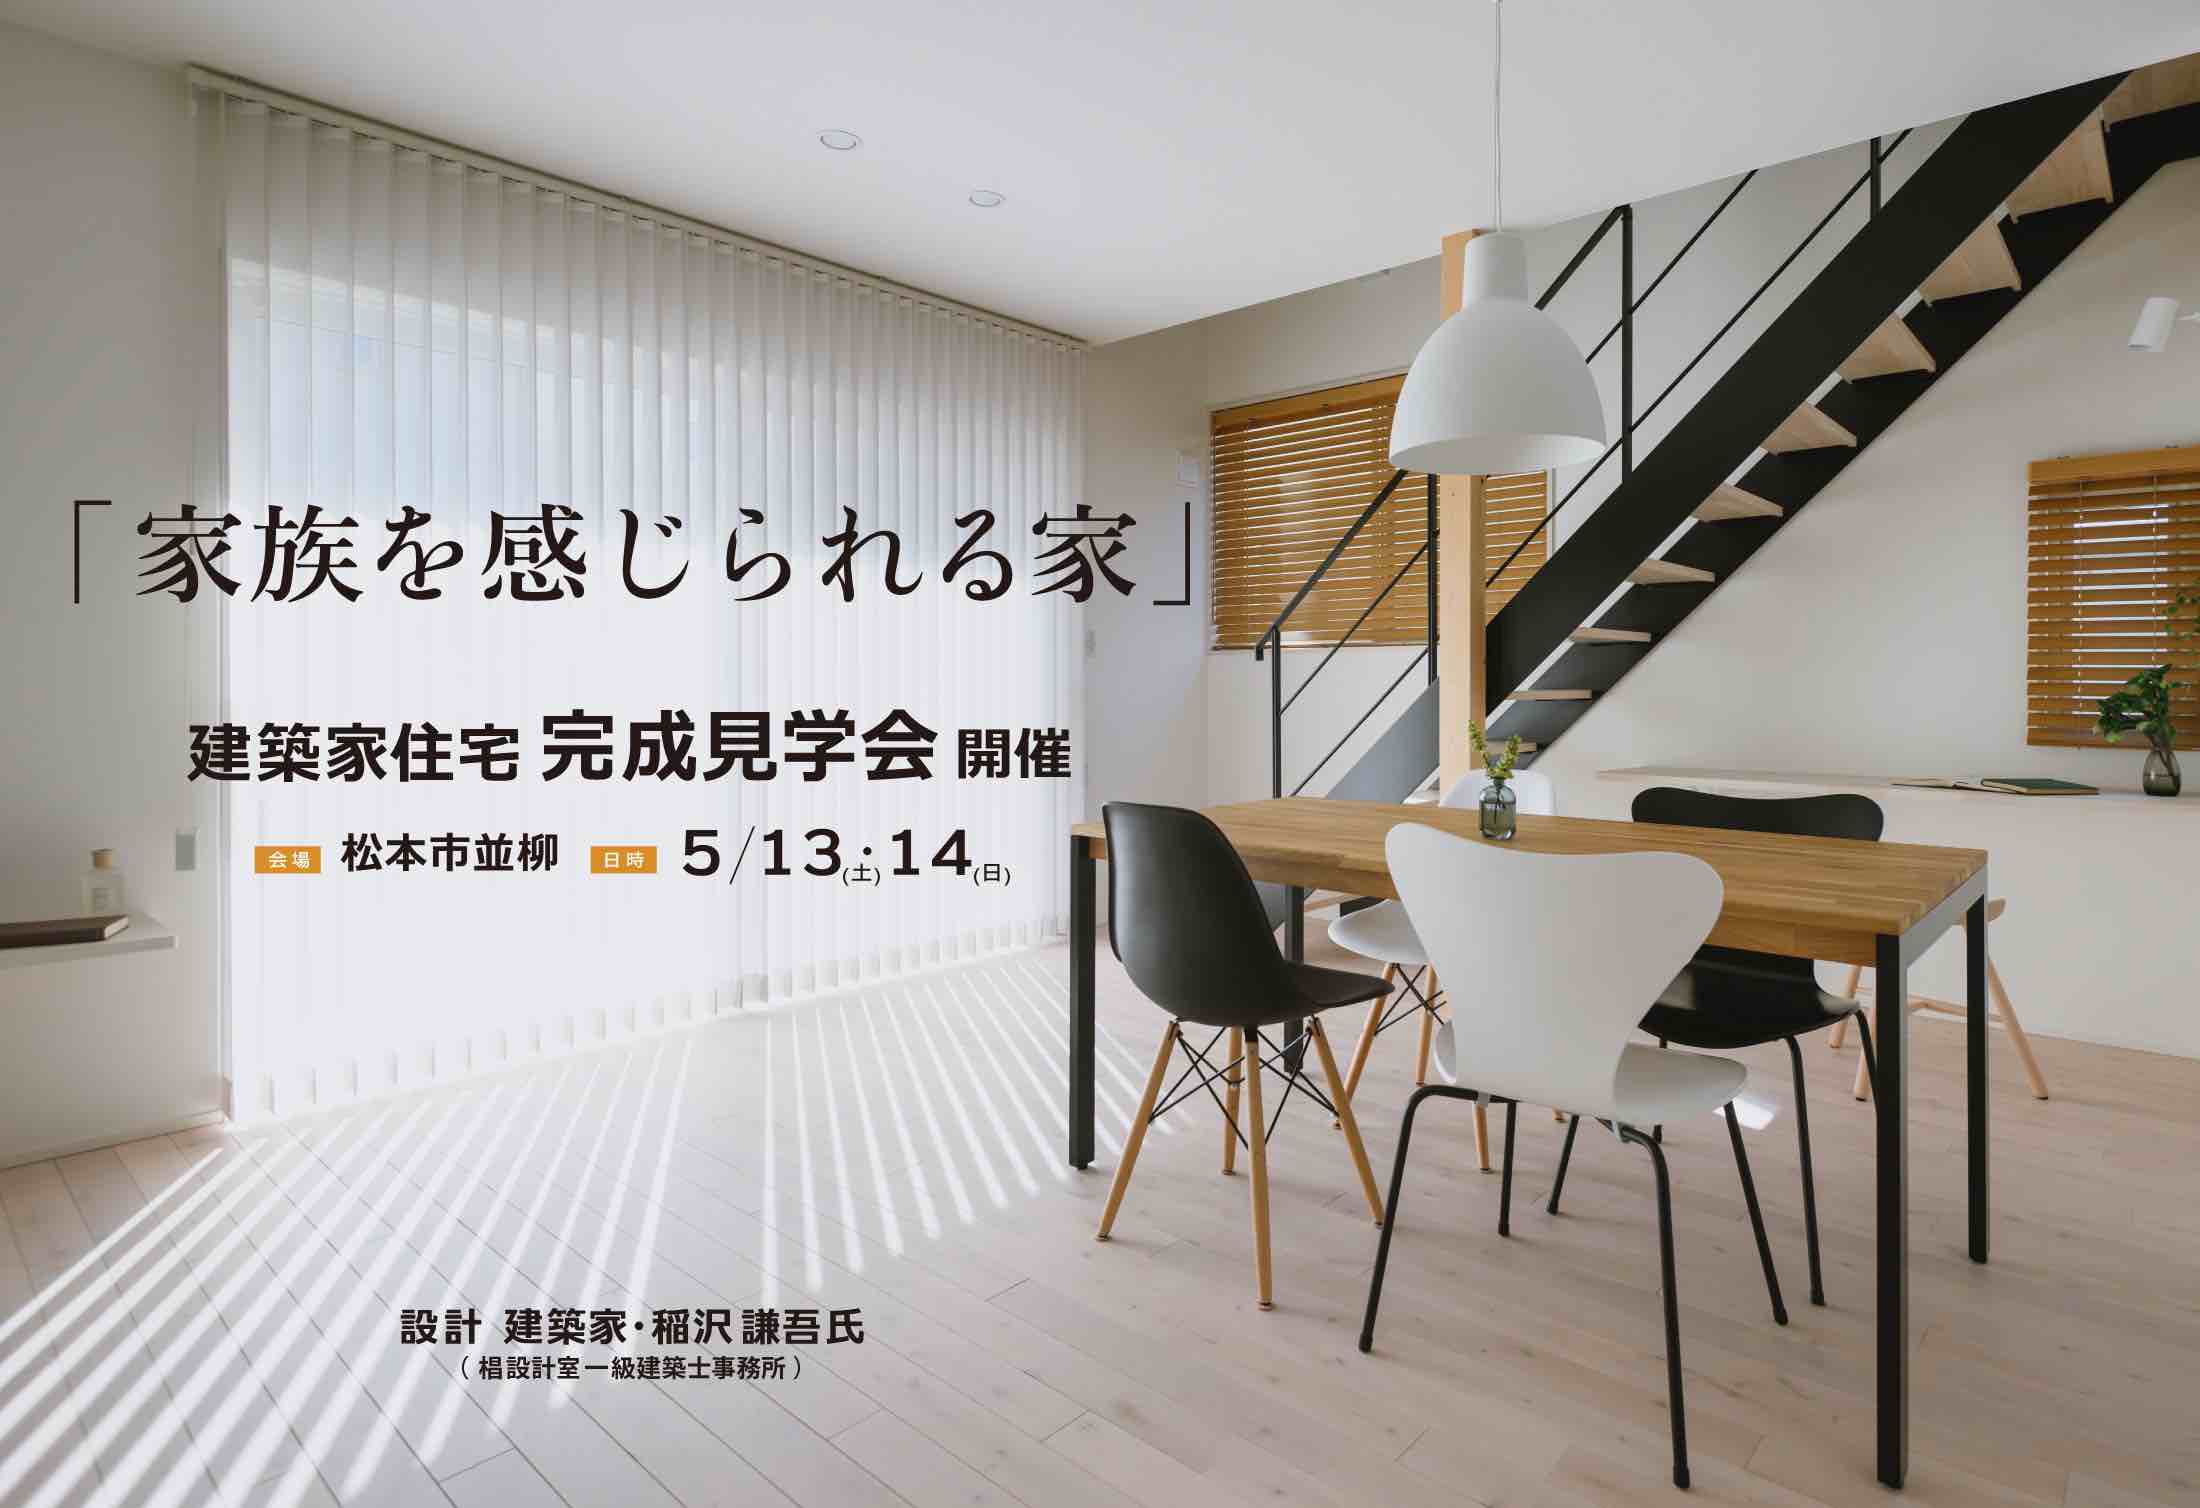 2023年5月13日・14日 「家族を感じられる家」建築家住宅 完成見学会@松本市並柳